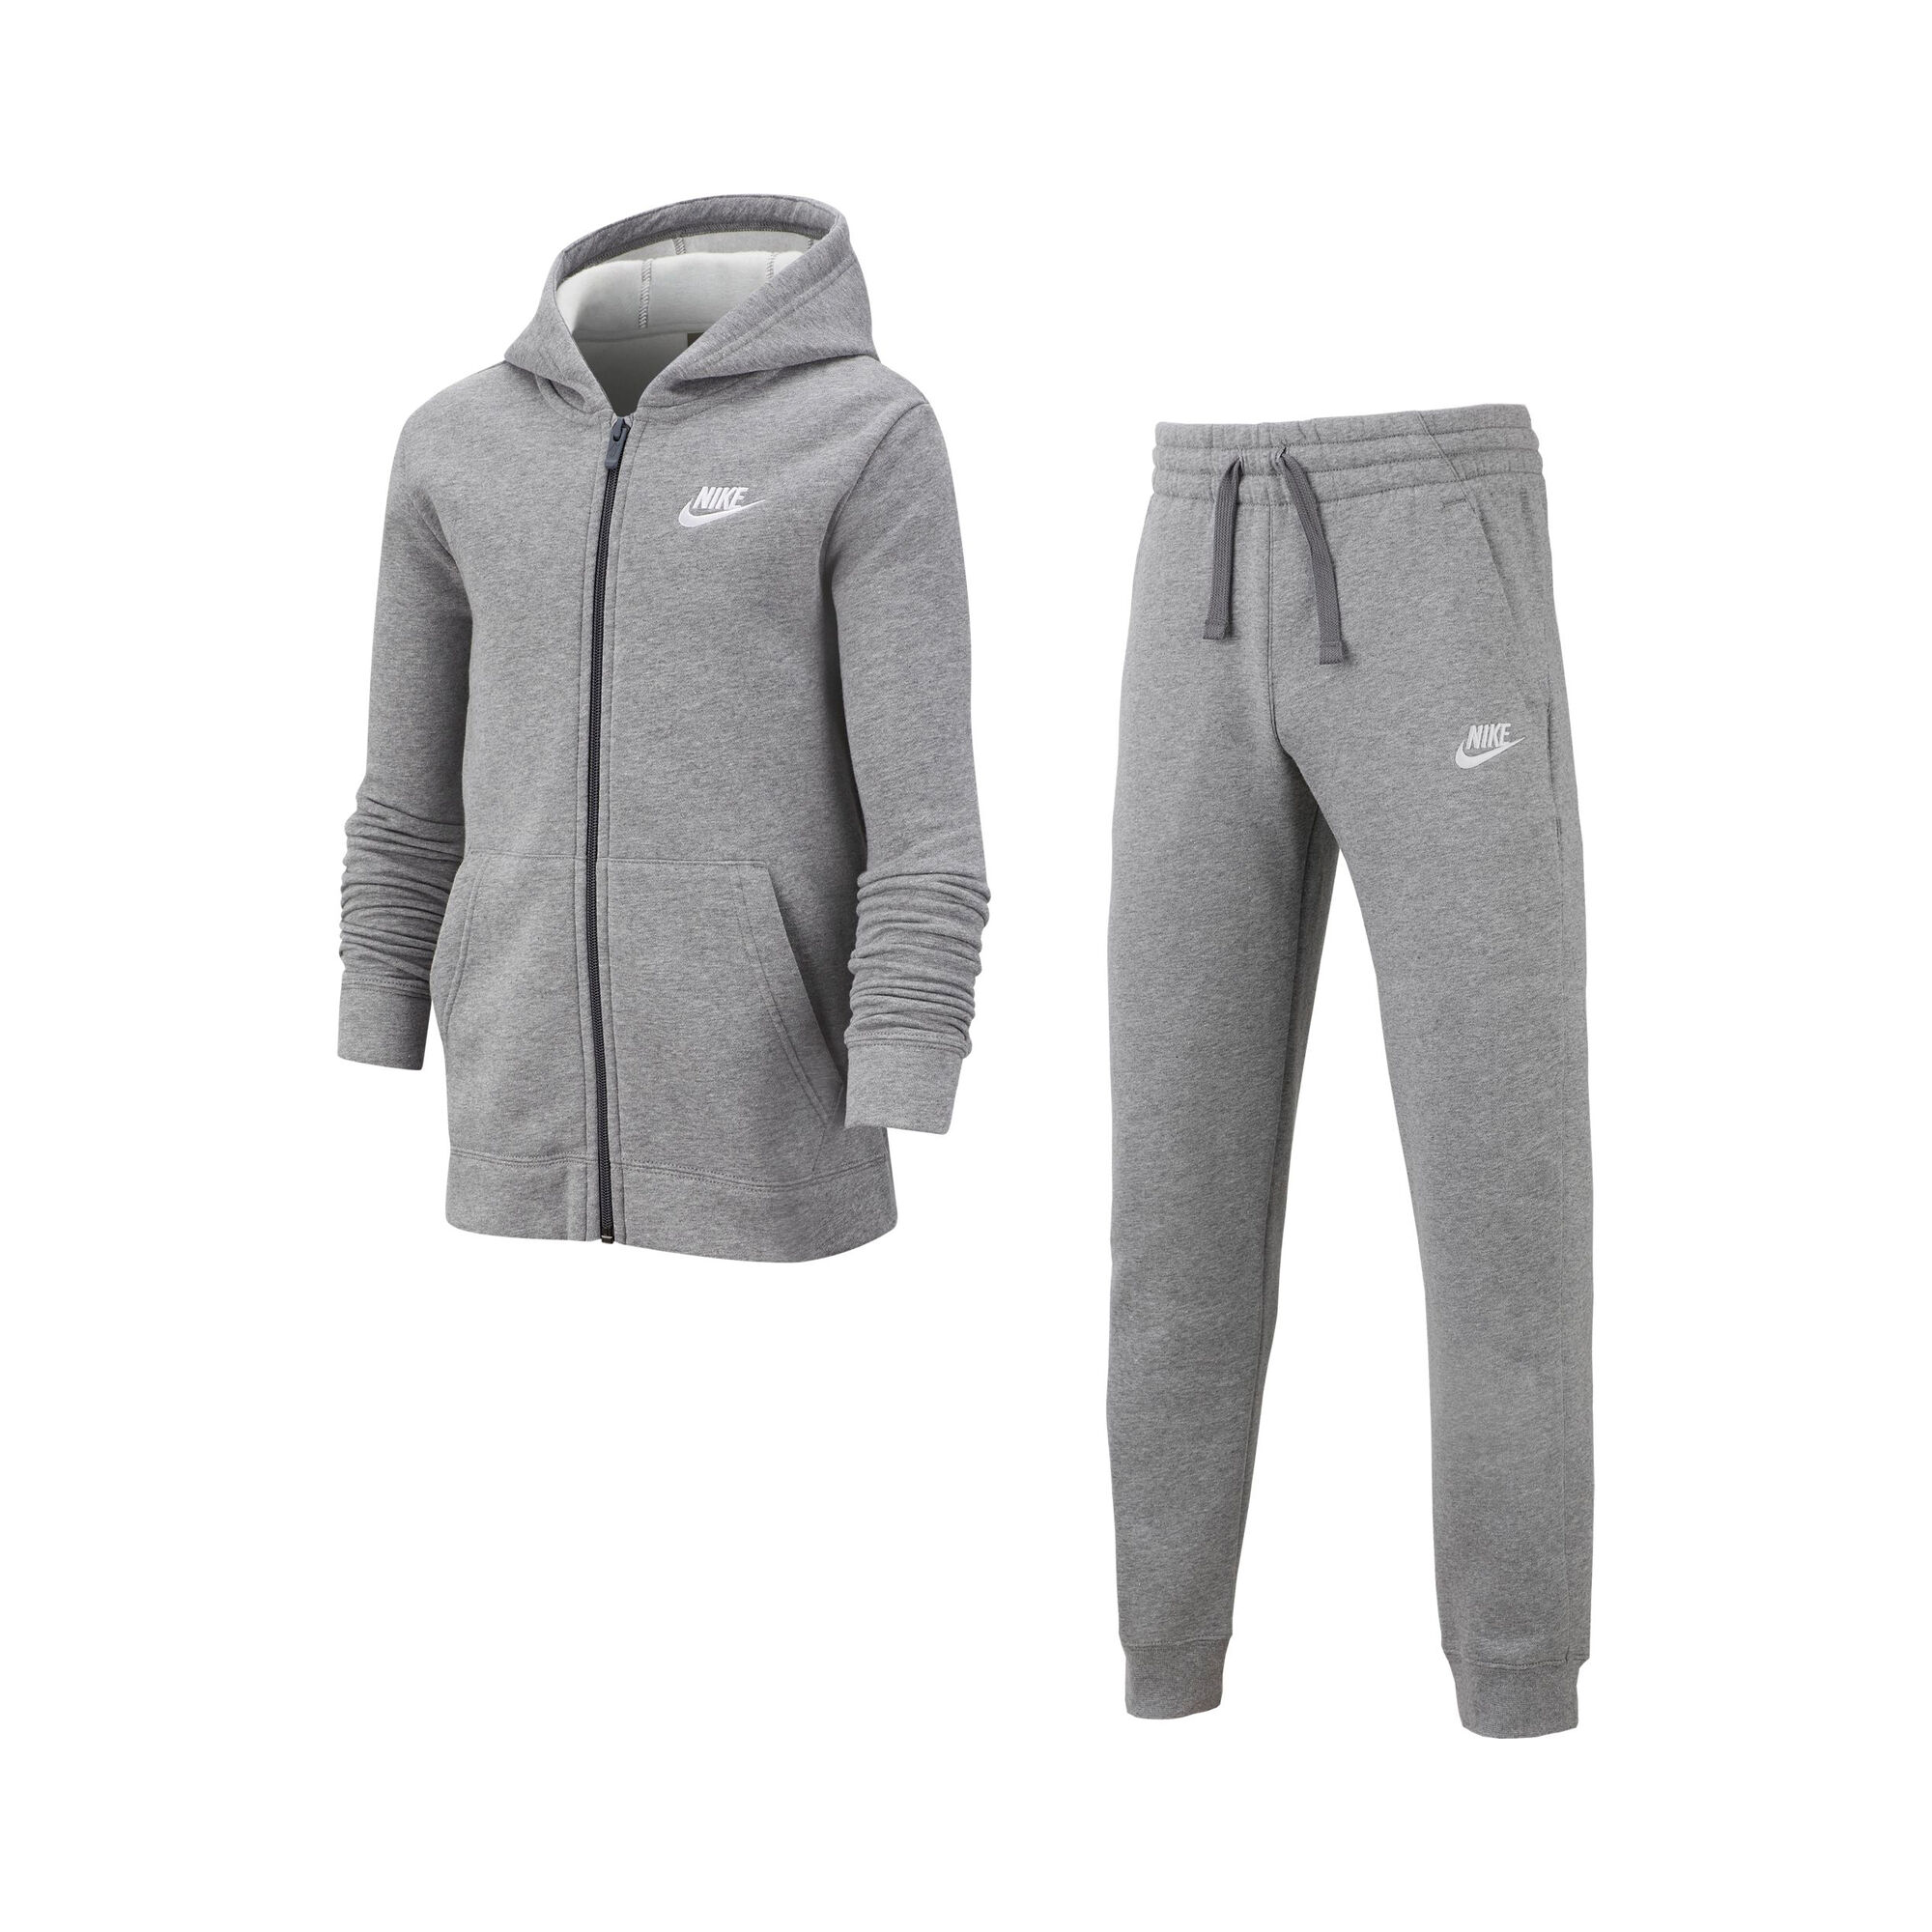 Nike Sportswear Trainingsanzug Jungen Grau, Weiß online kaufen | Tennis  Point CH